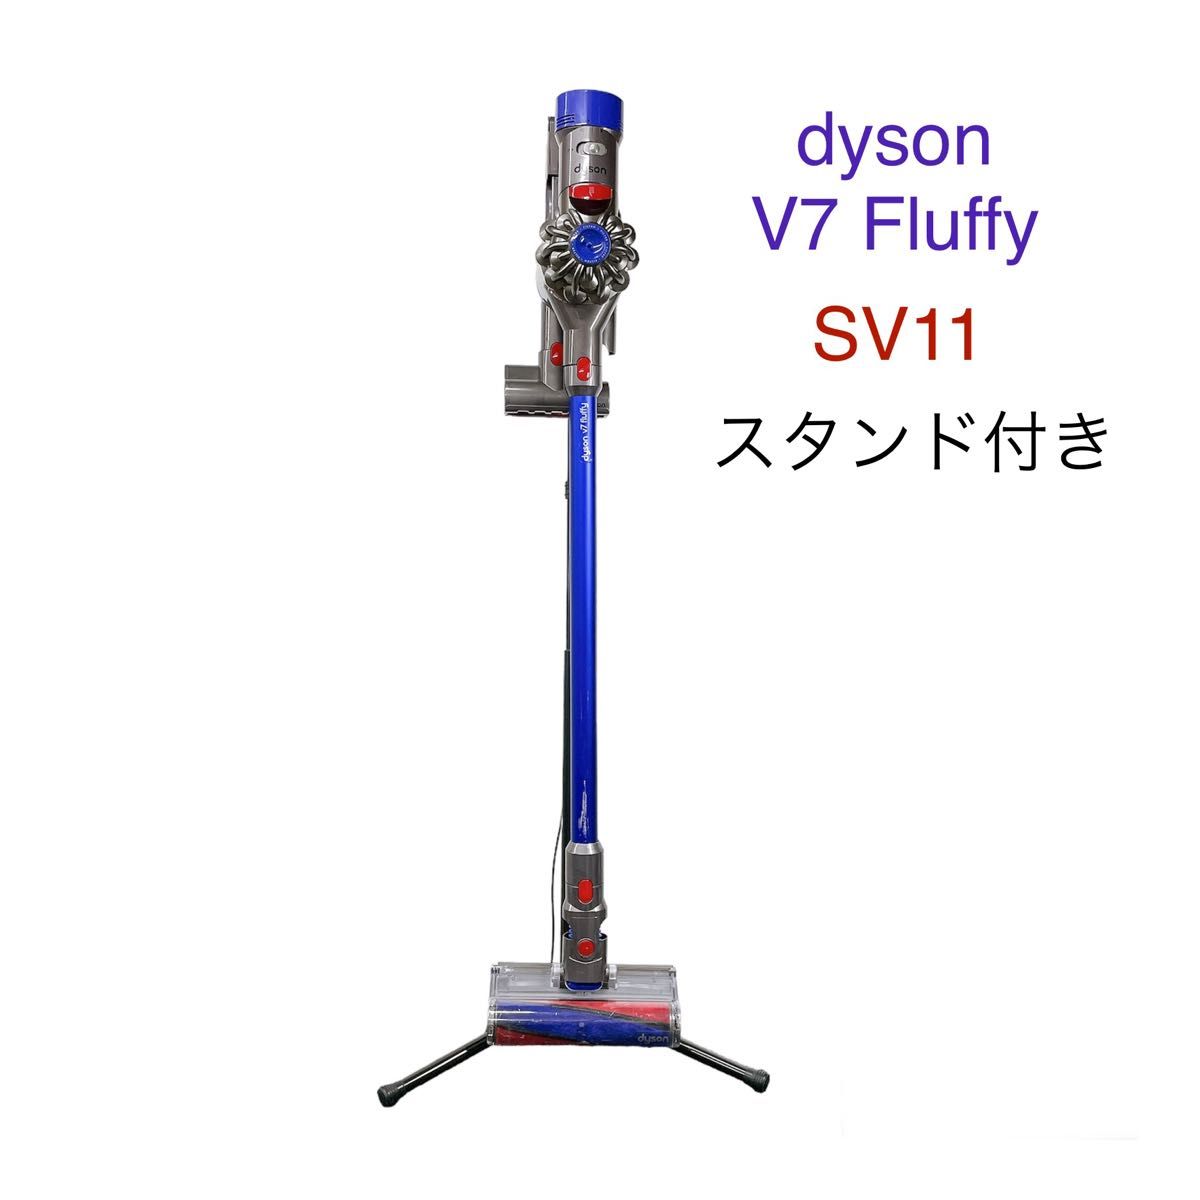 dyson ダイソン V7 fluffy SV11 掃除機 スタンド付き